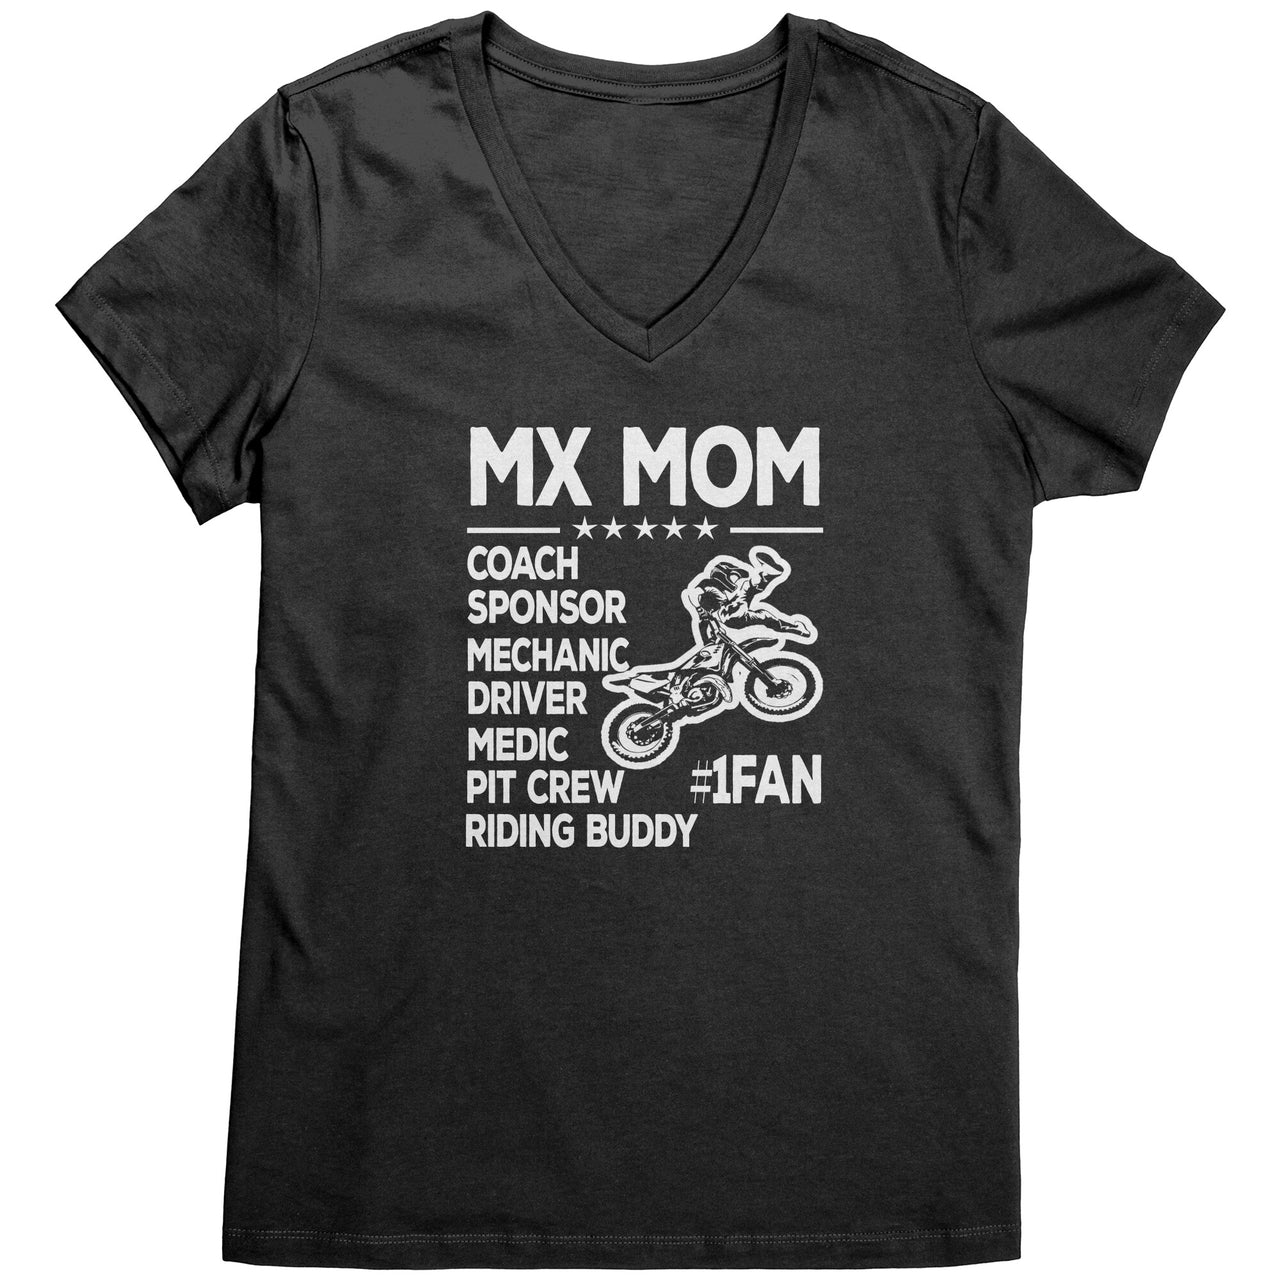 MX Mom First Fan T-Shirts